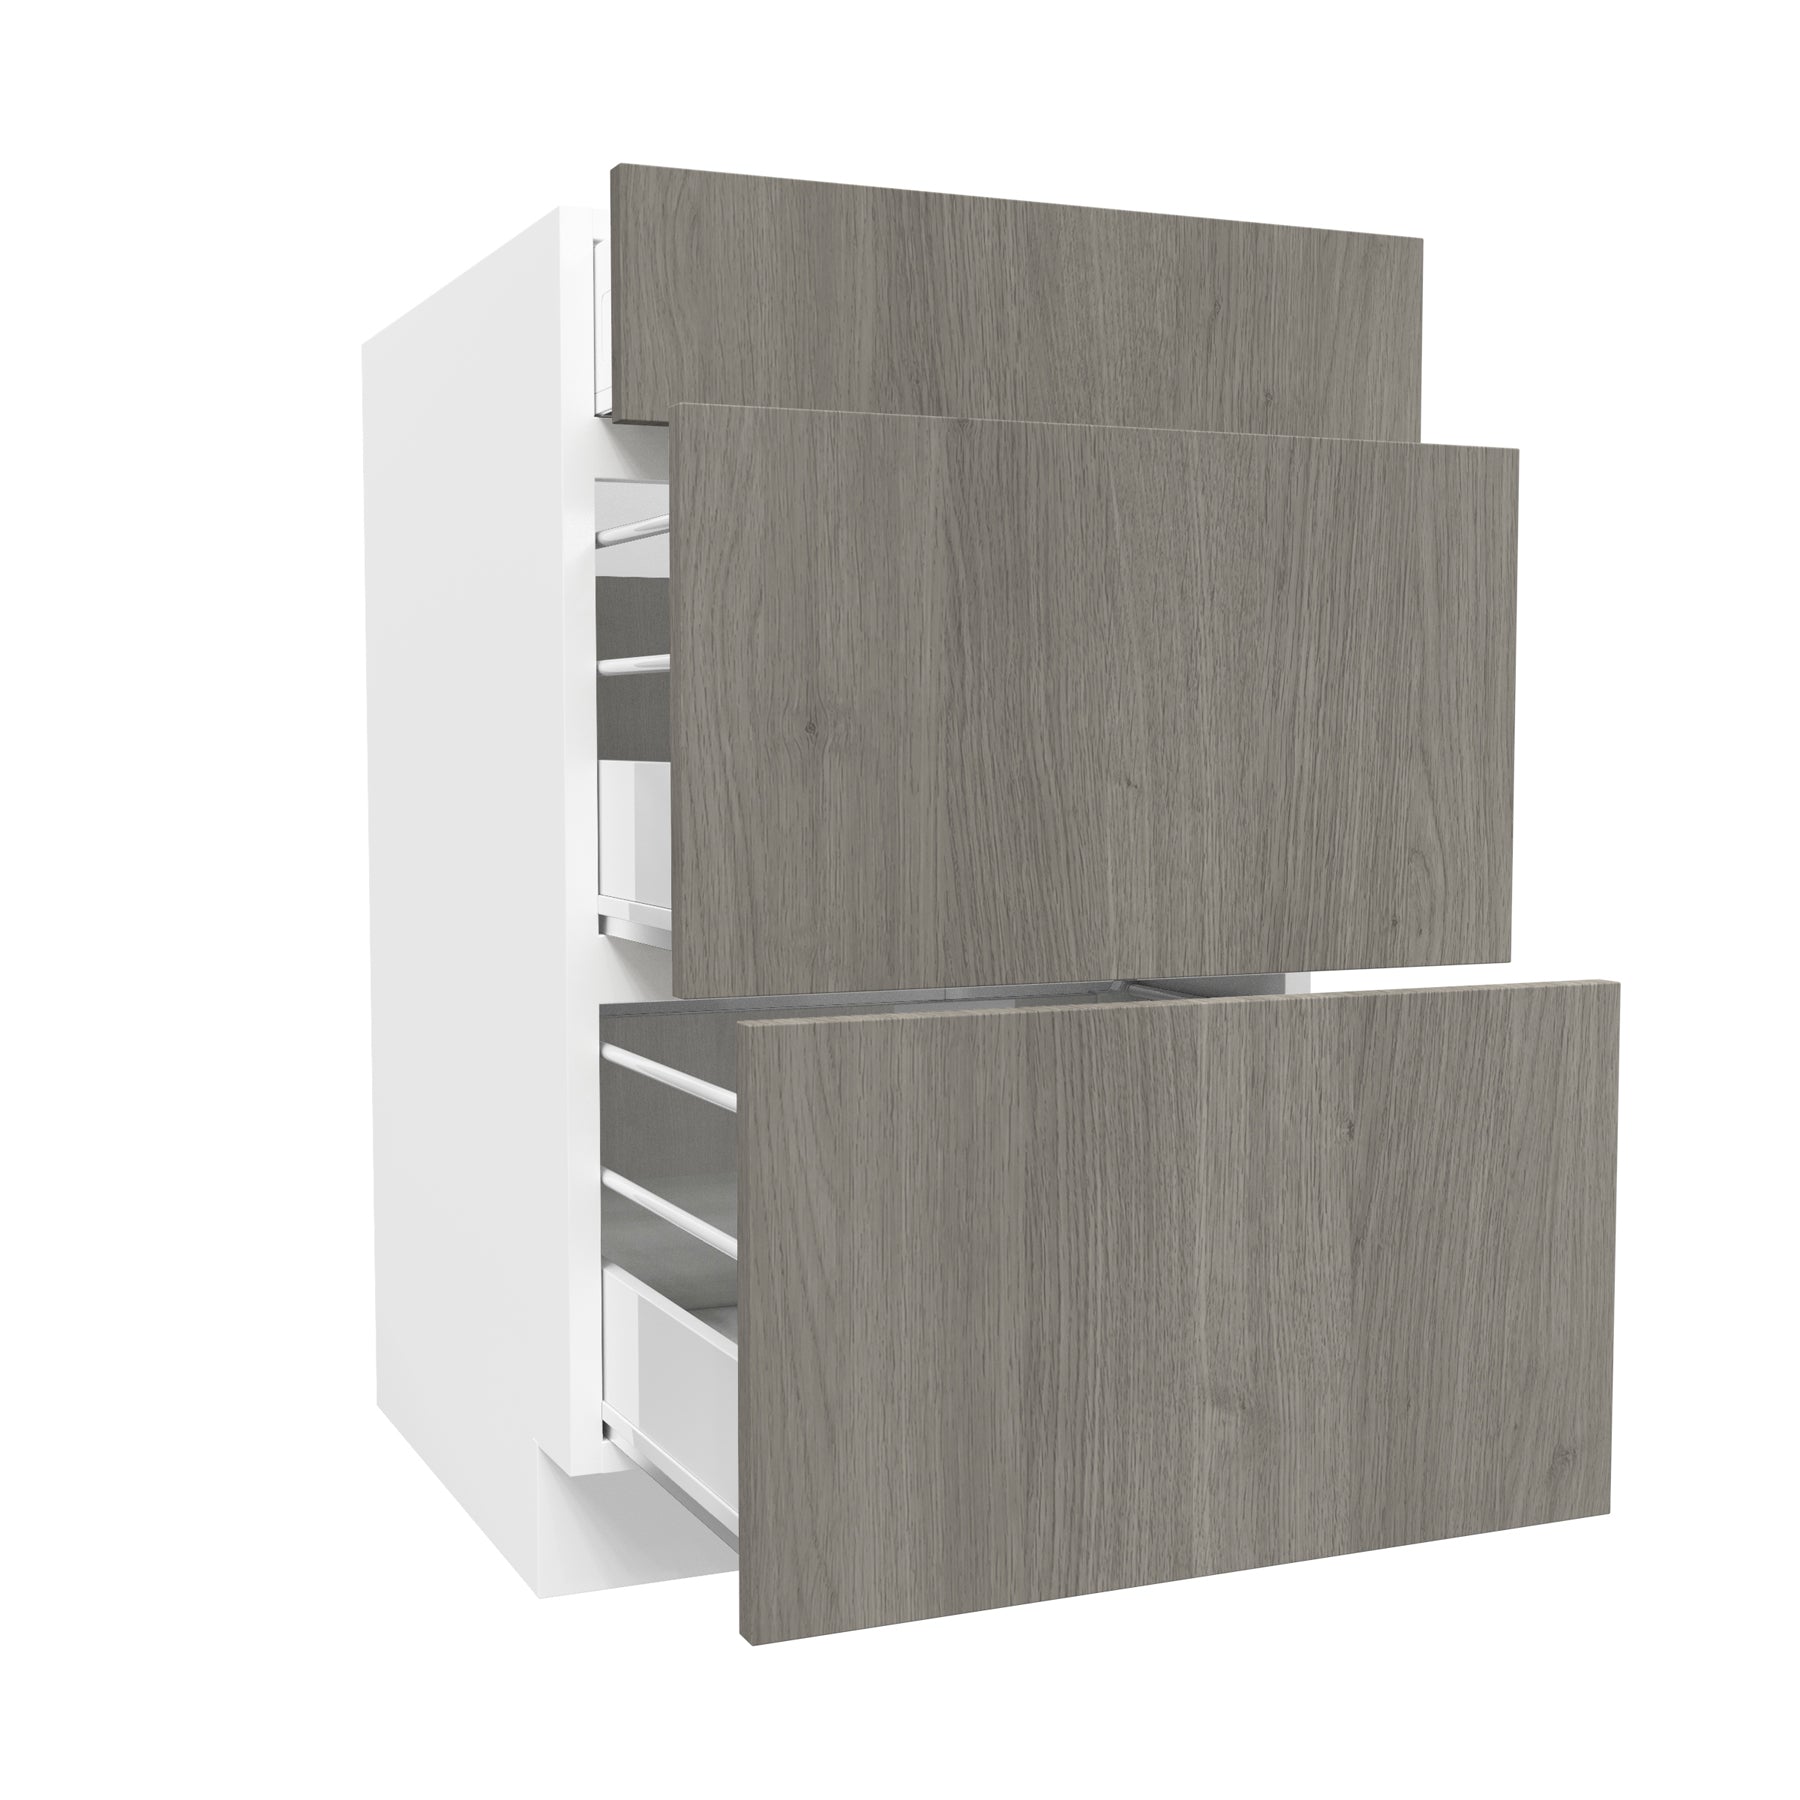 3 Drawer Base Cabinet| Matrix Silver | 21W x 34.5H x 24D